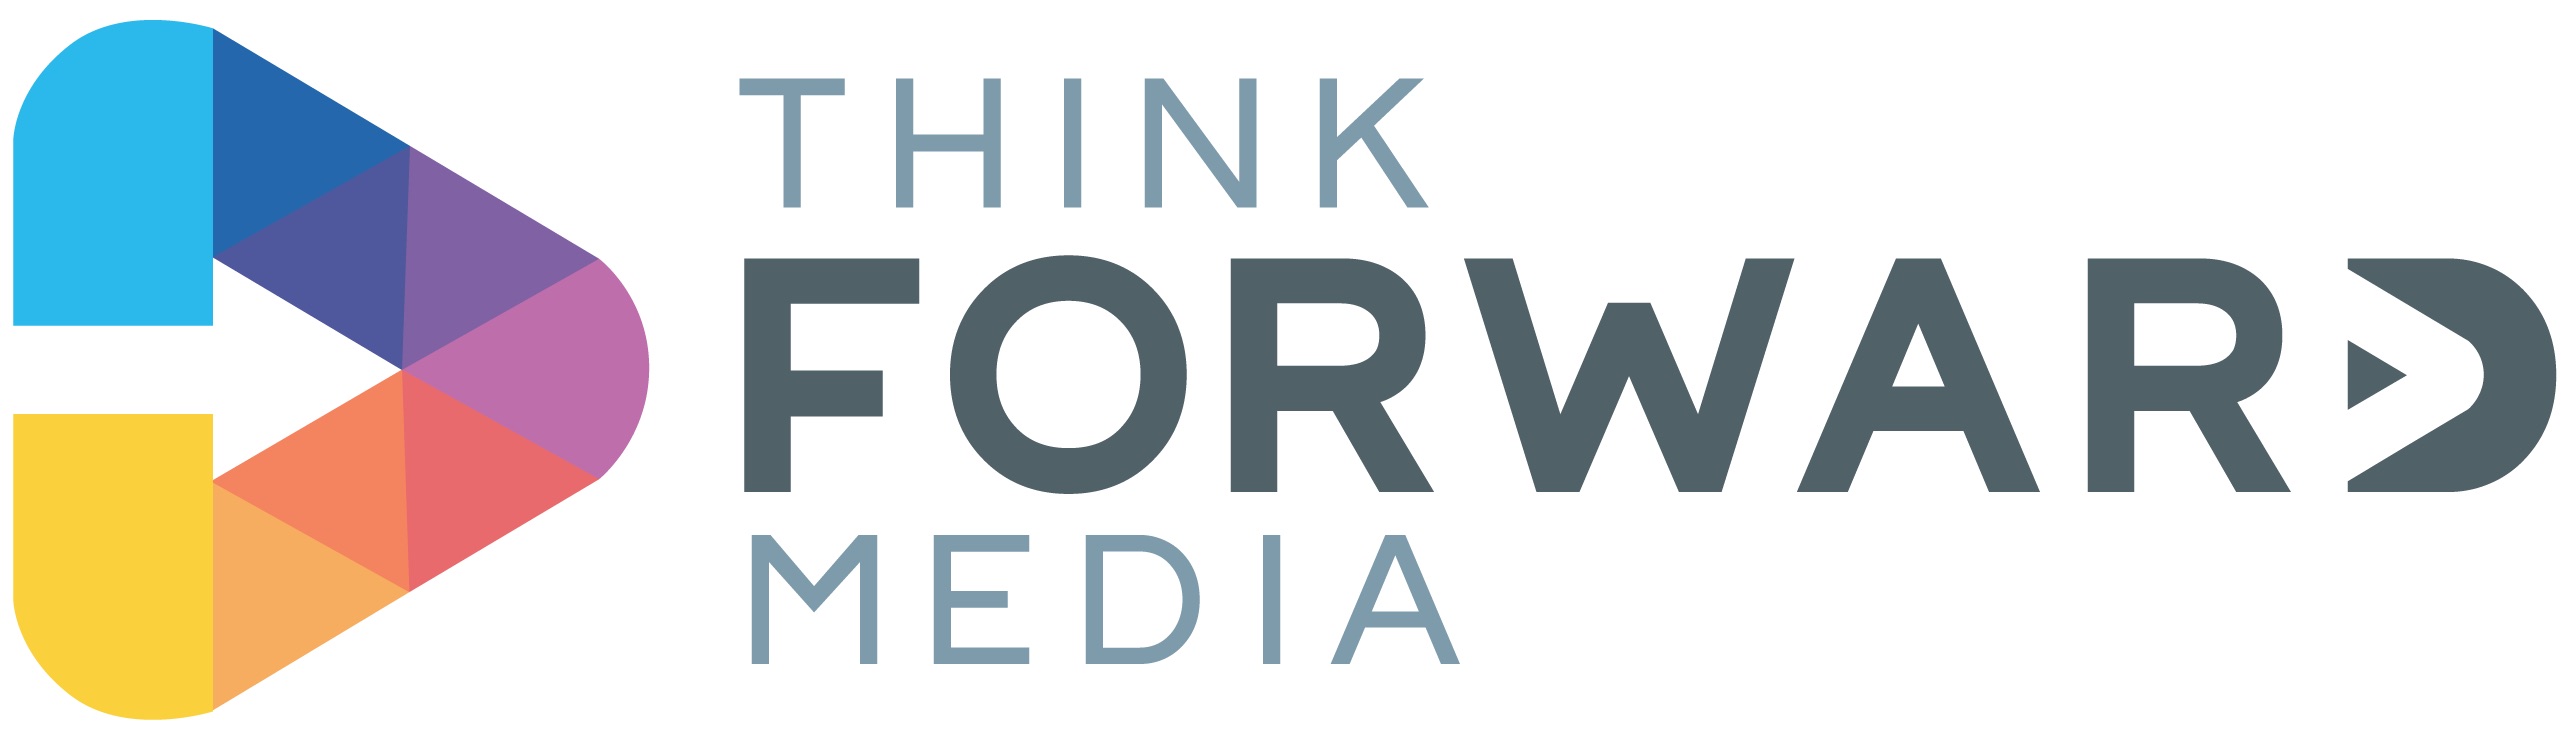 Think Forward Media